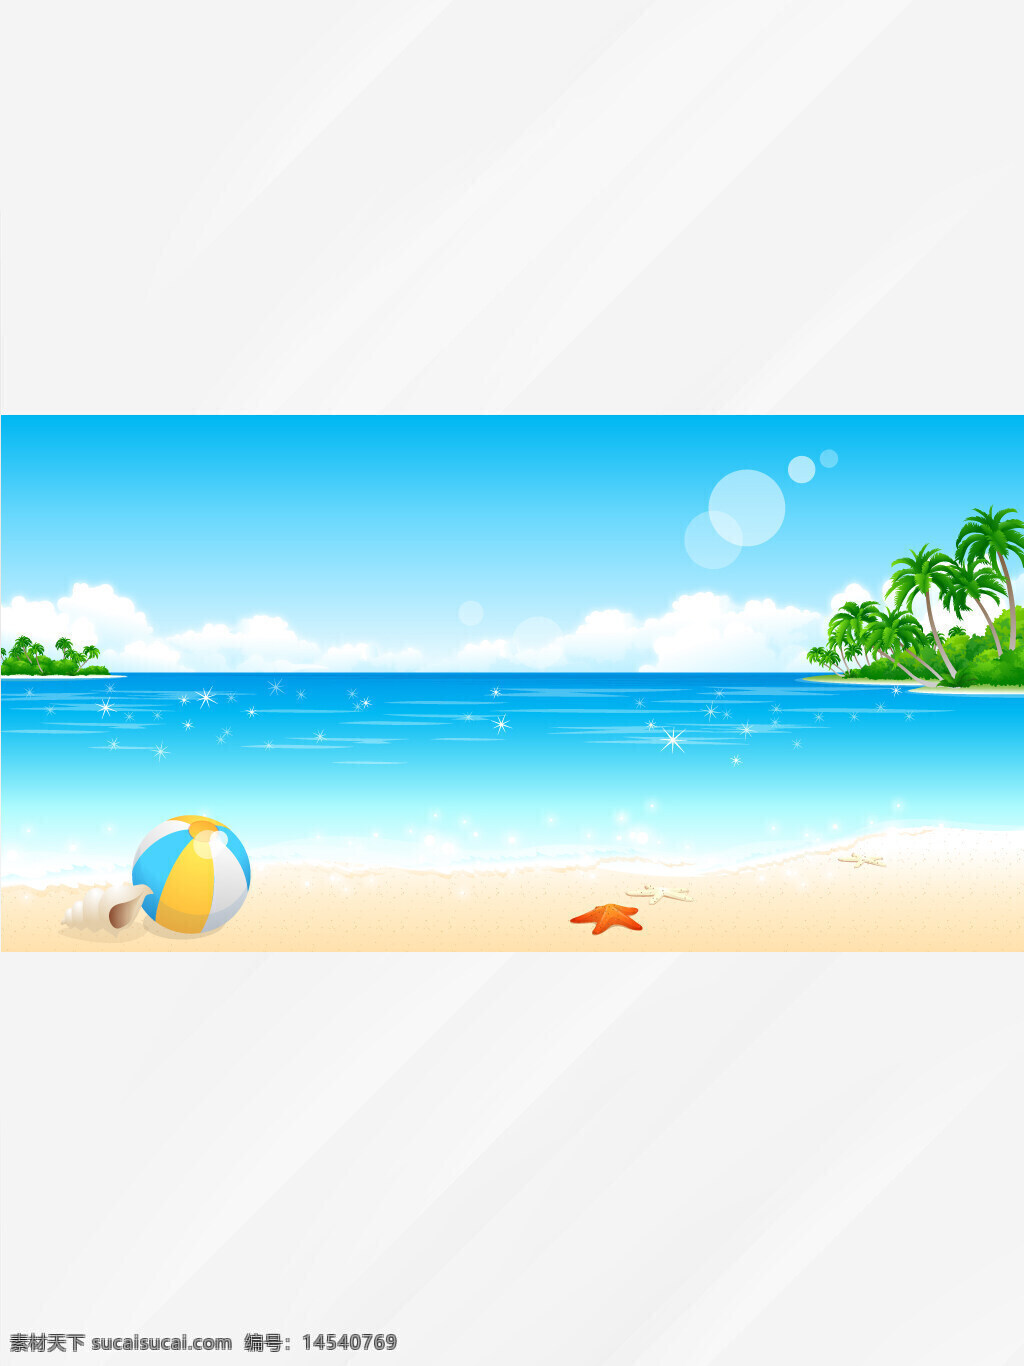 大海 海边 水 沙滩 海星 蓝天 白云 椰树 球 海岛